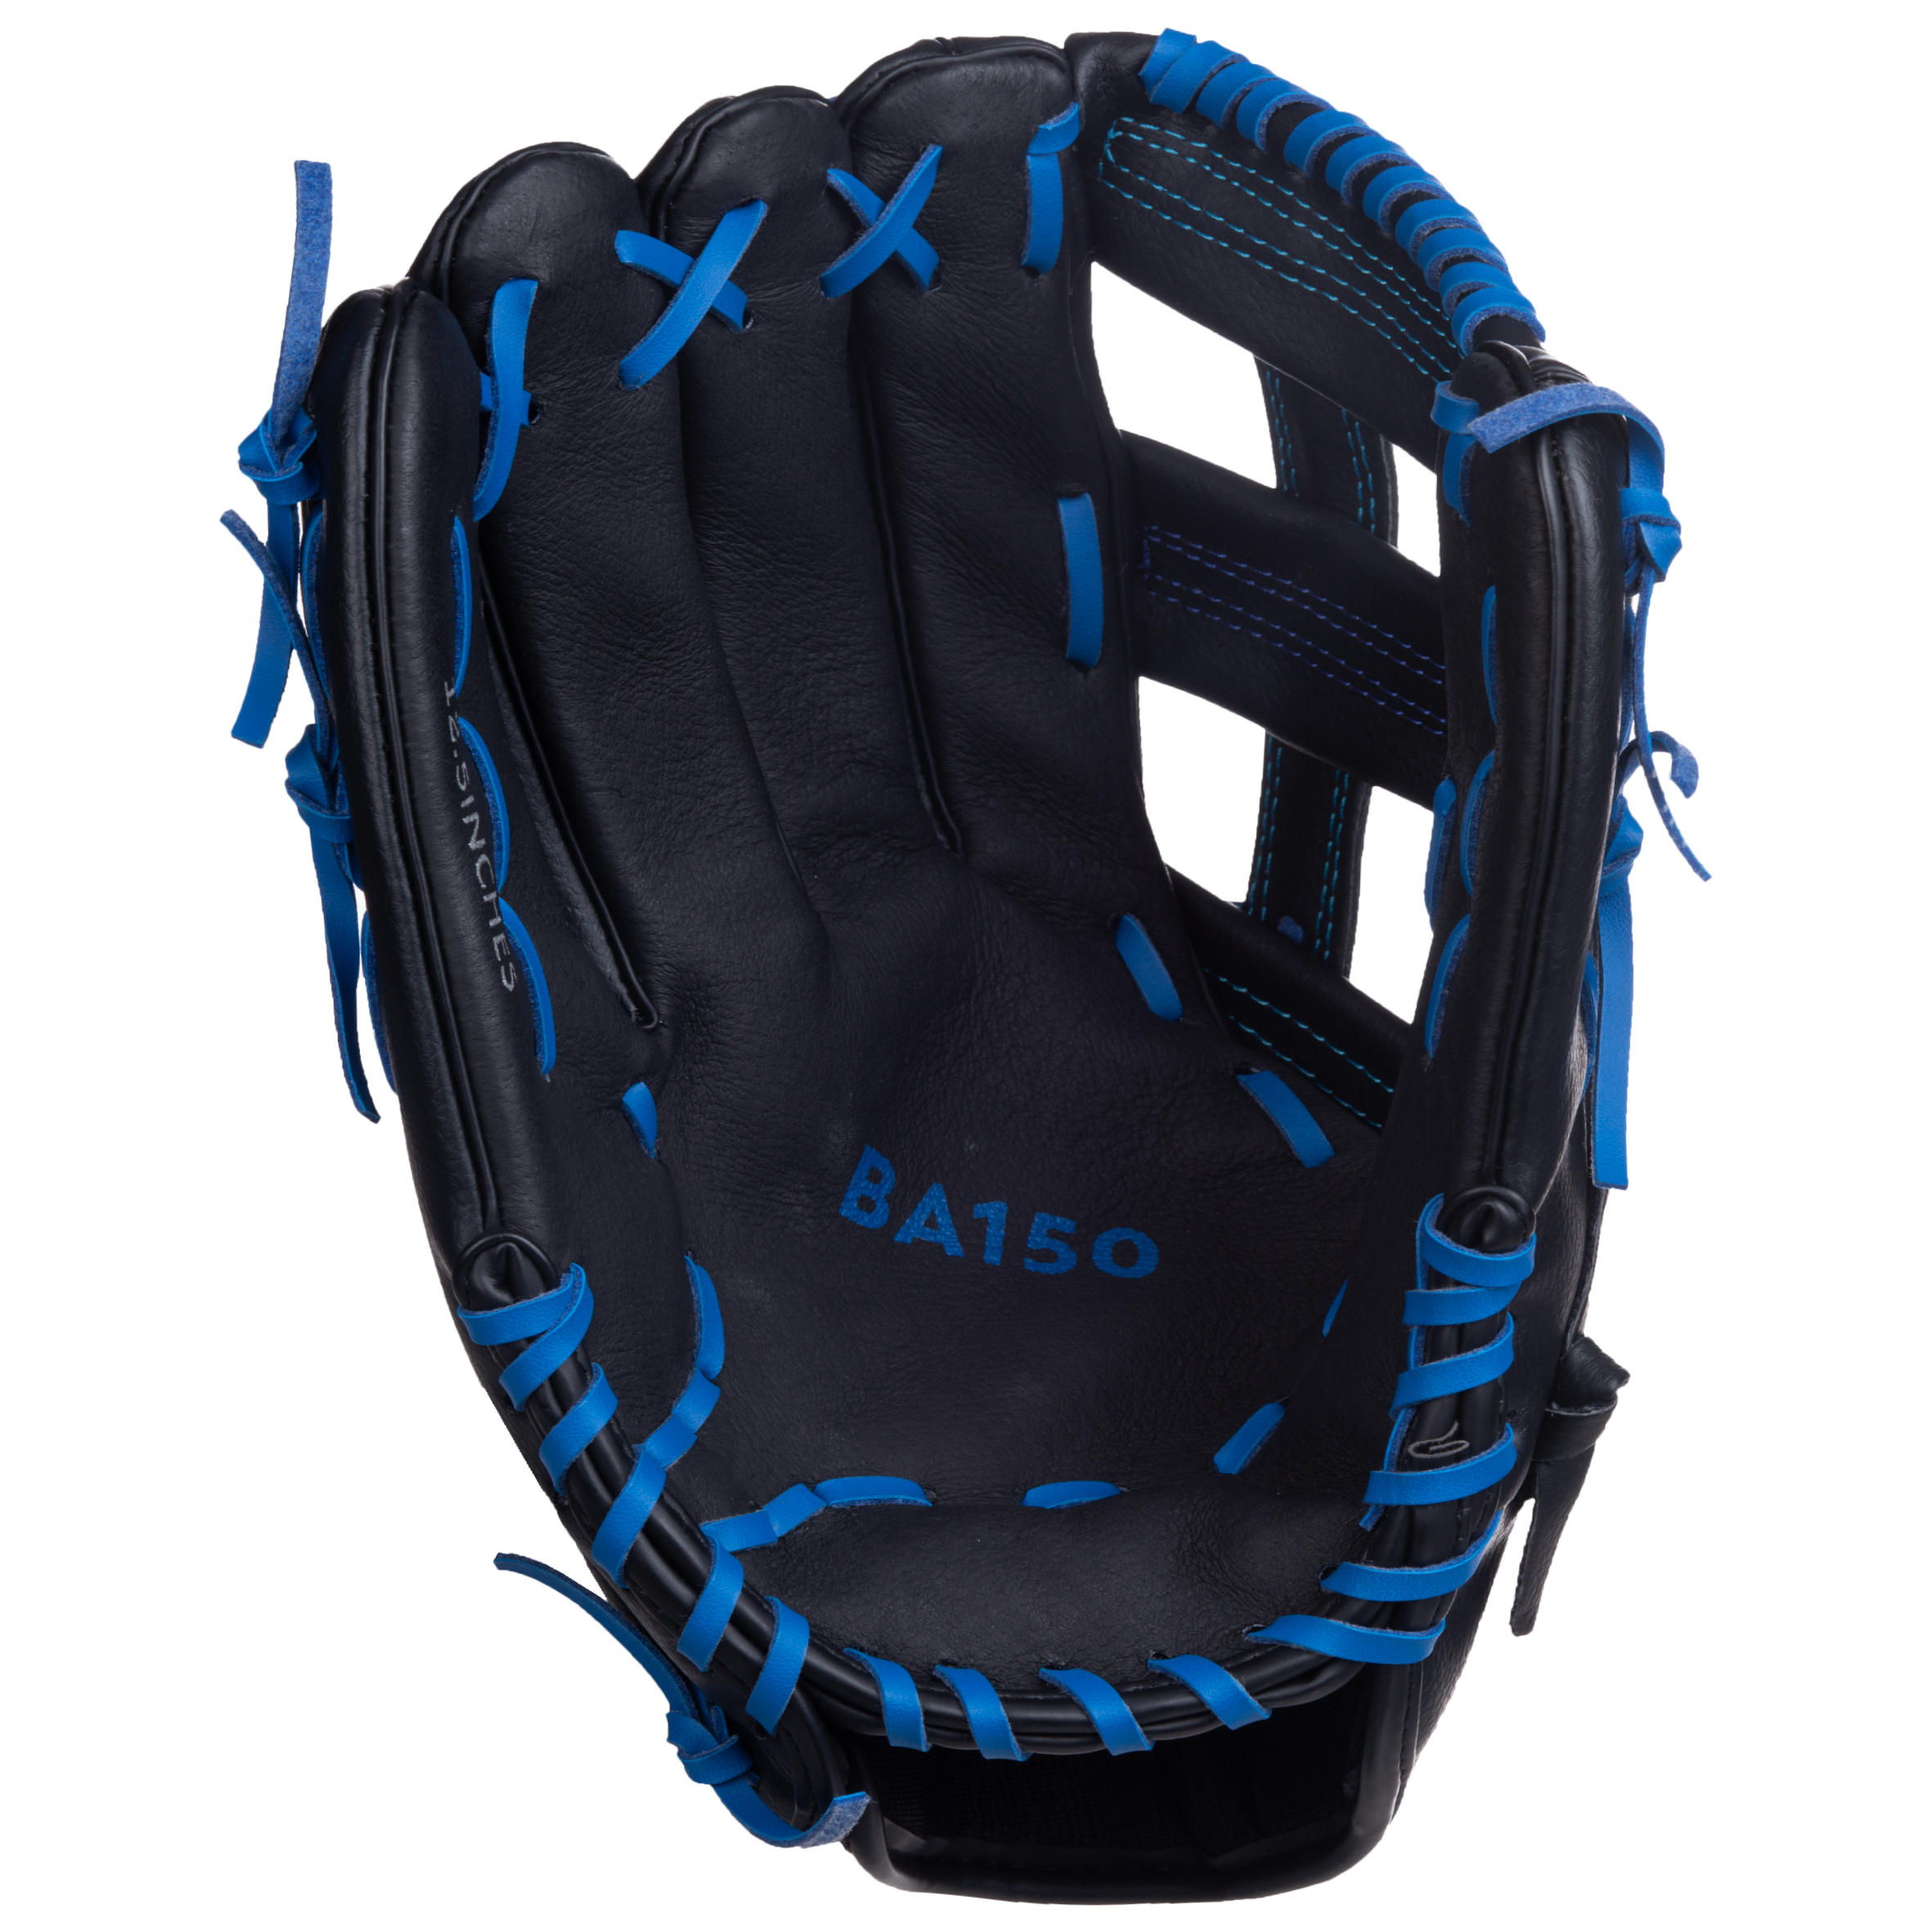 Gant de baseball gaucher - BA 150 noir/bleu - KIPSTA